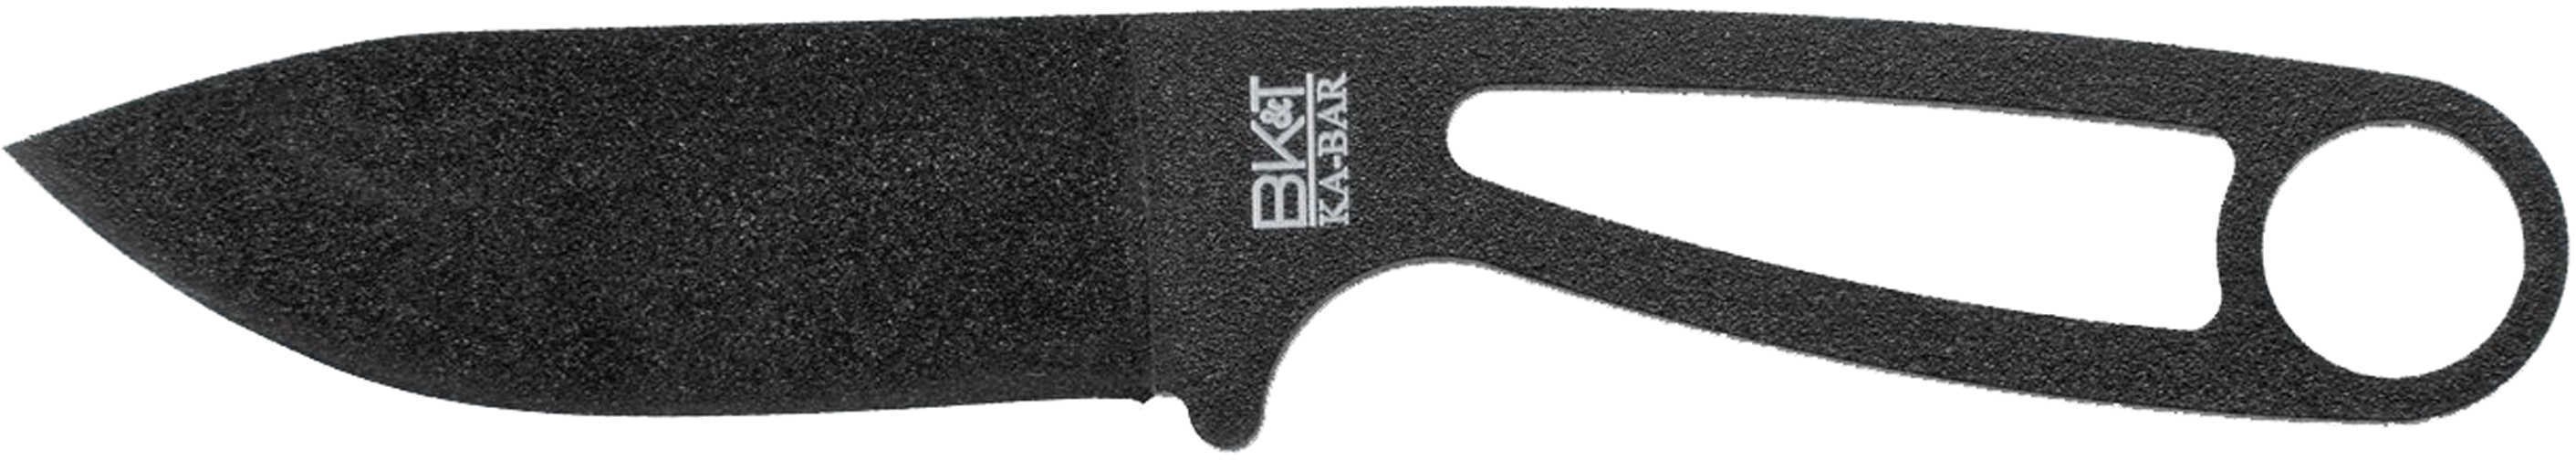 KABAR Becker/KA-BAR/ESEE Eskabar Fixed Blade Knife 3.25" Hard Plastic Sheath 1095 Cro-Van/Black